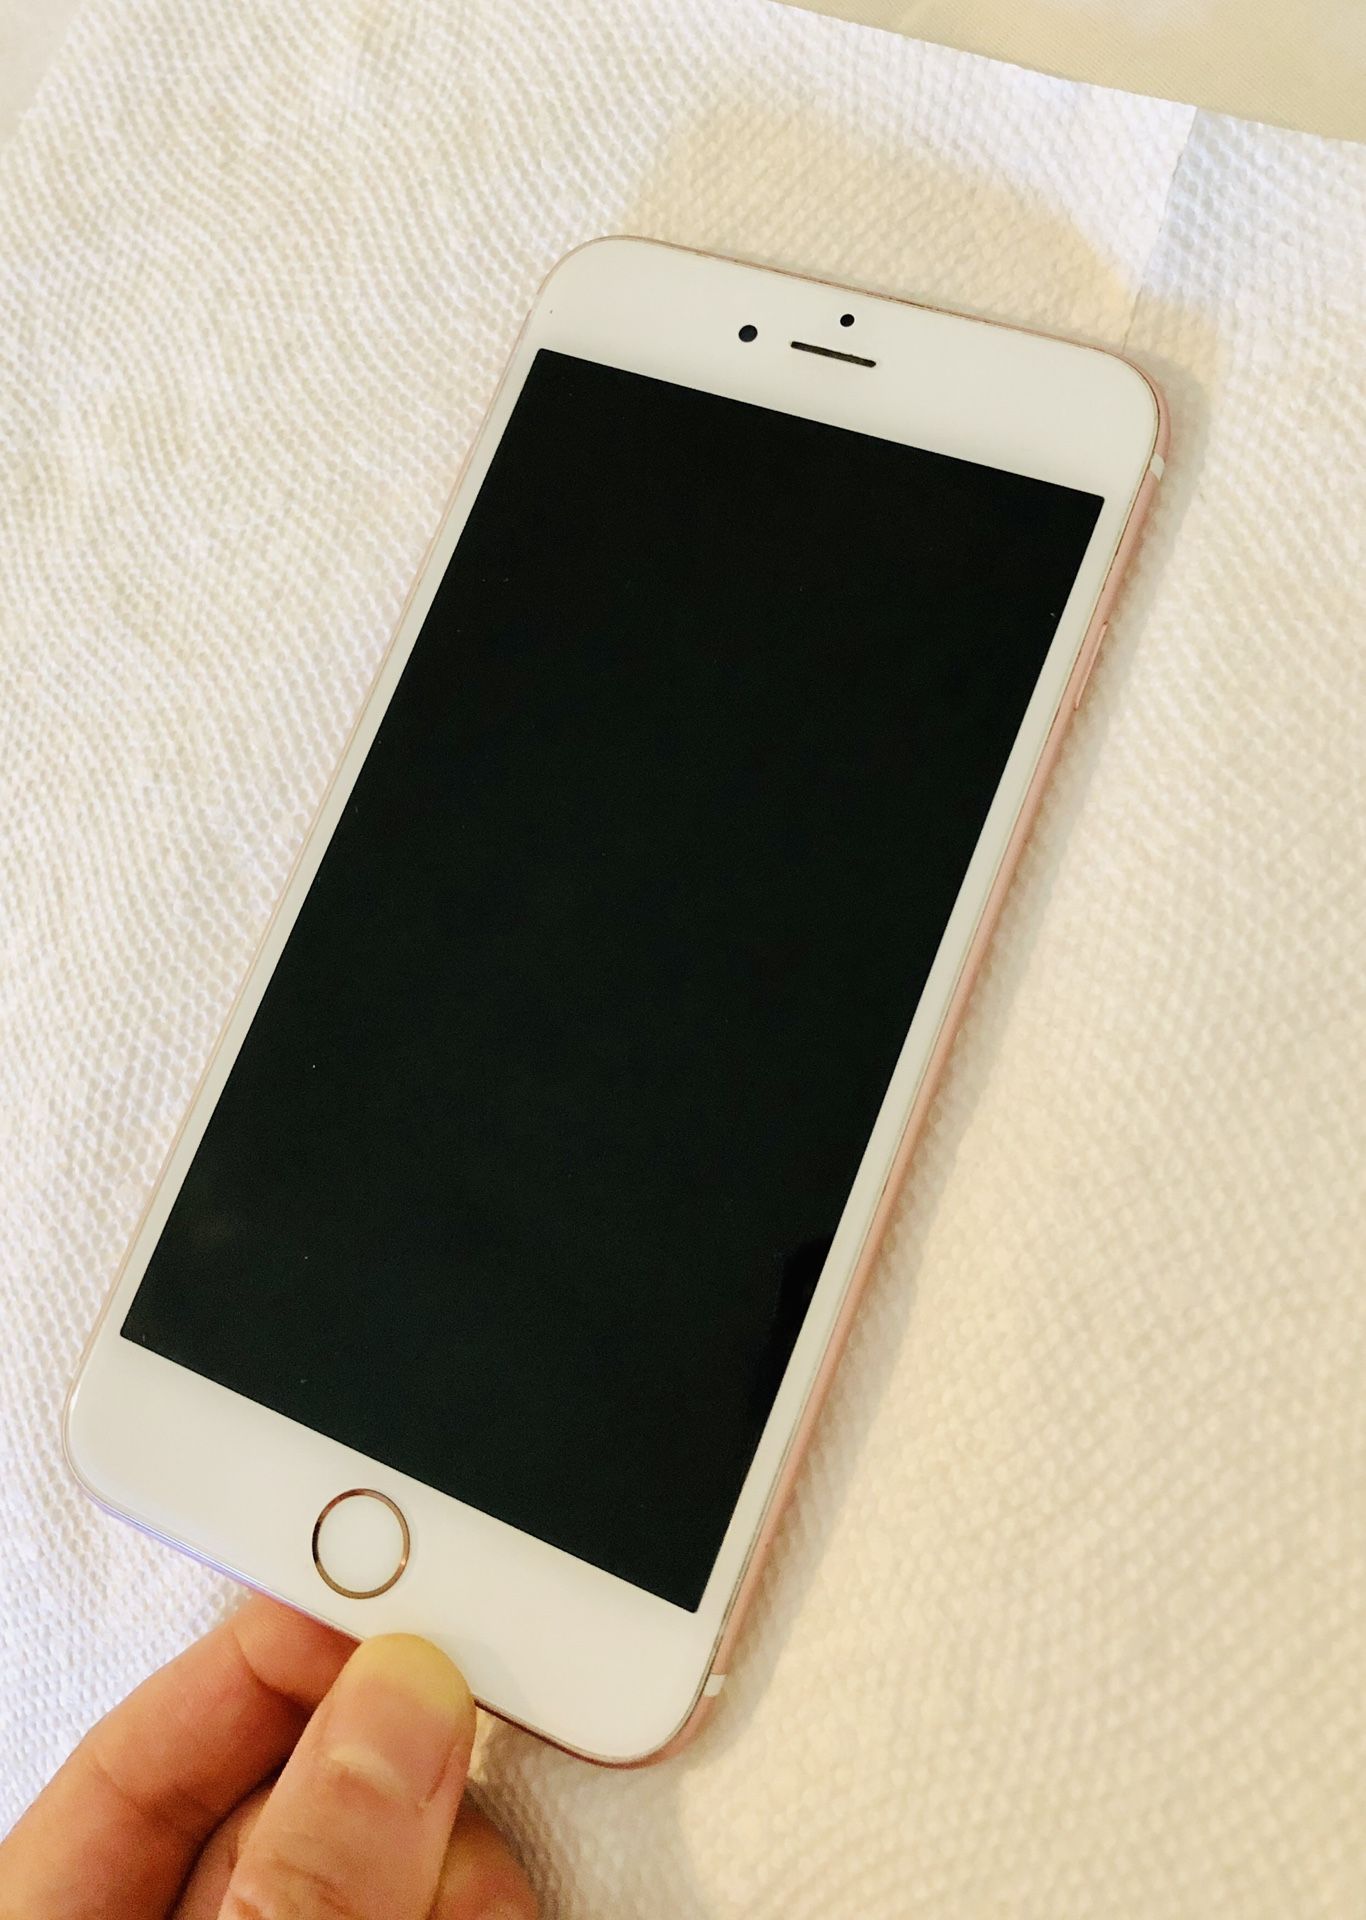 iPhone 6s Plus Rose Gold 128 GB Unlocked